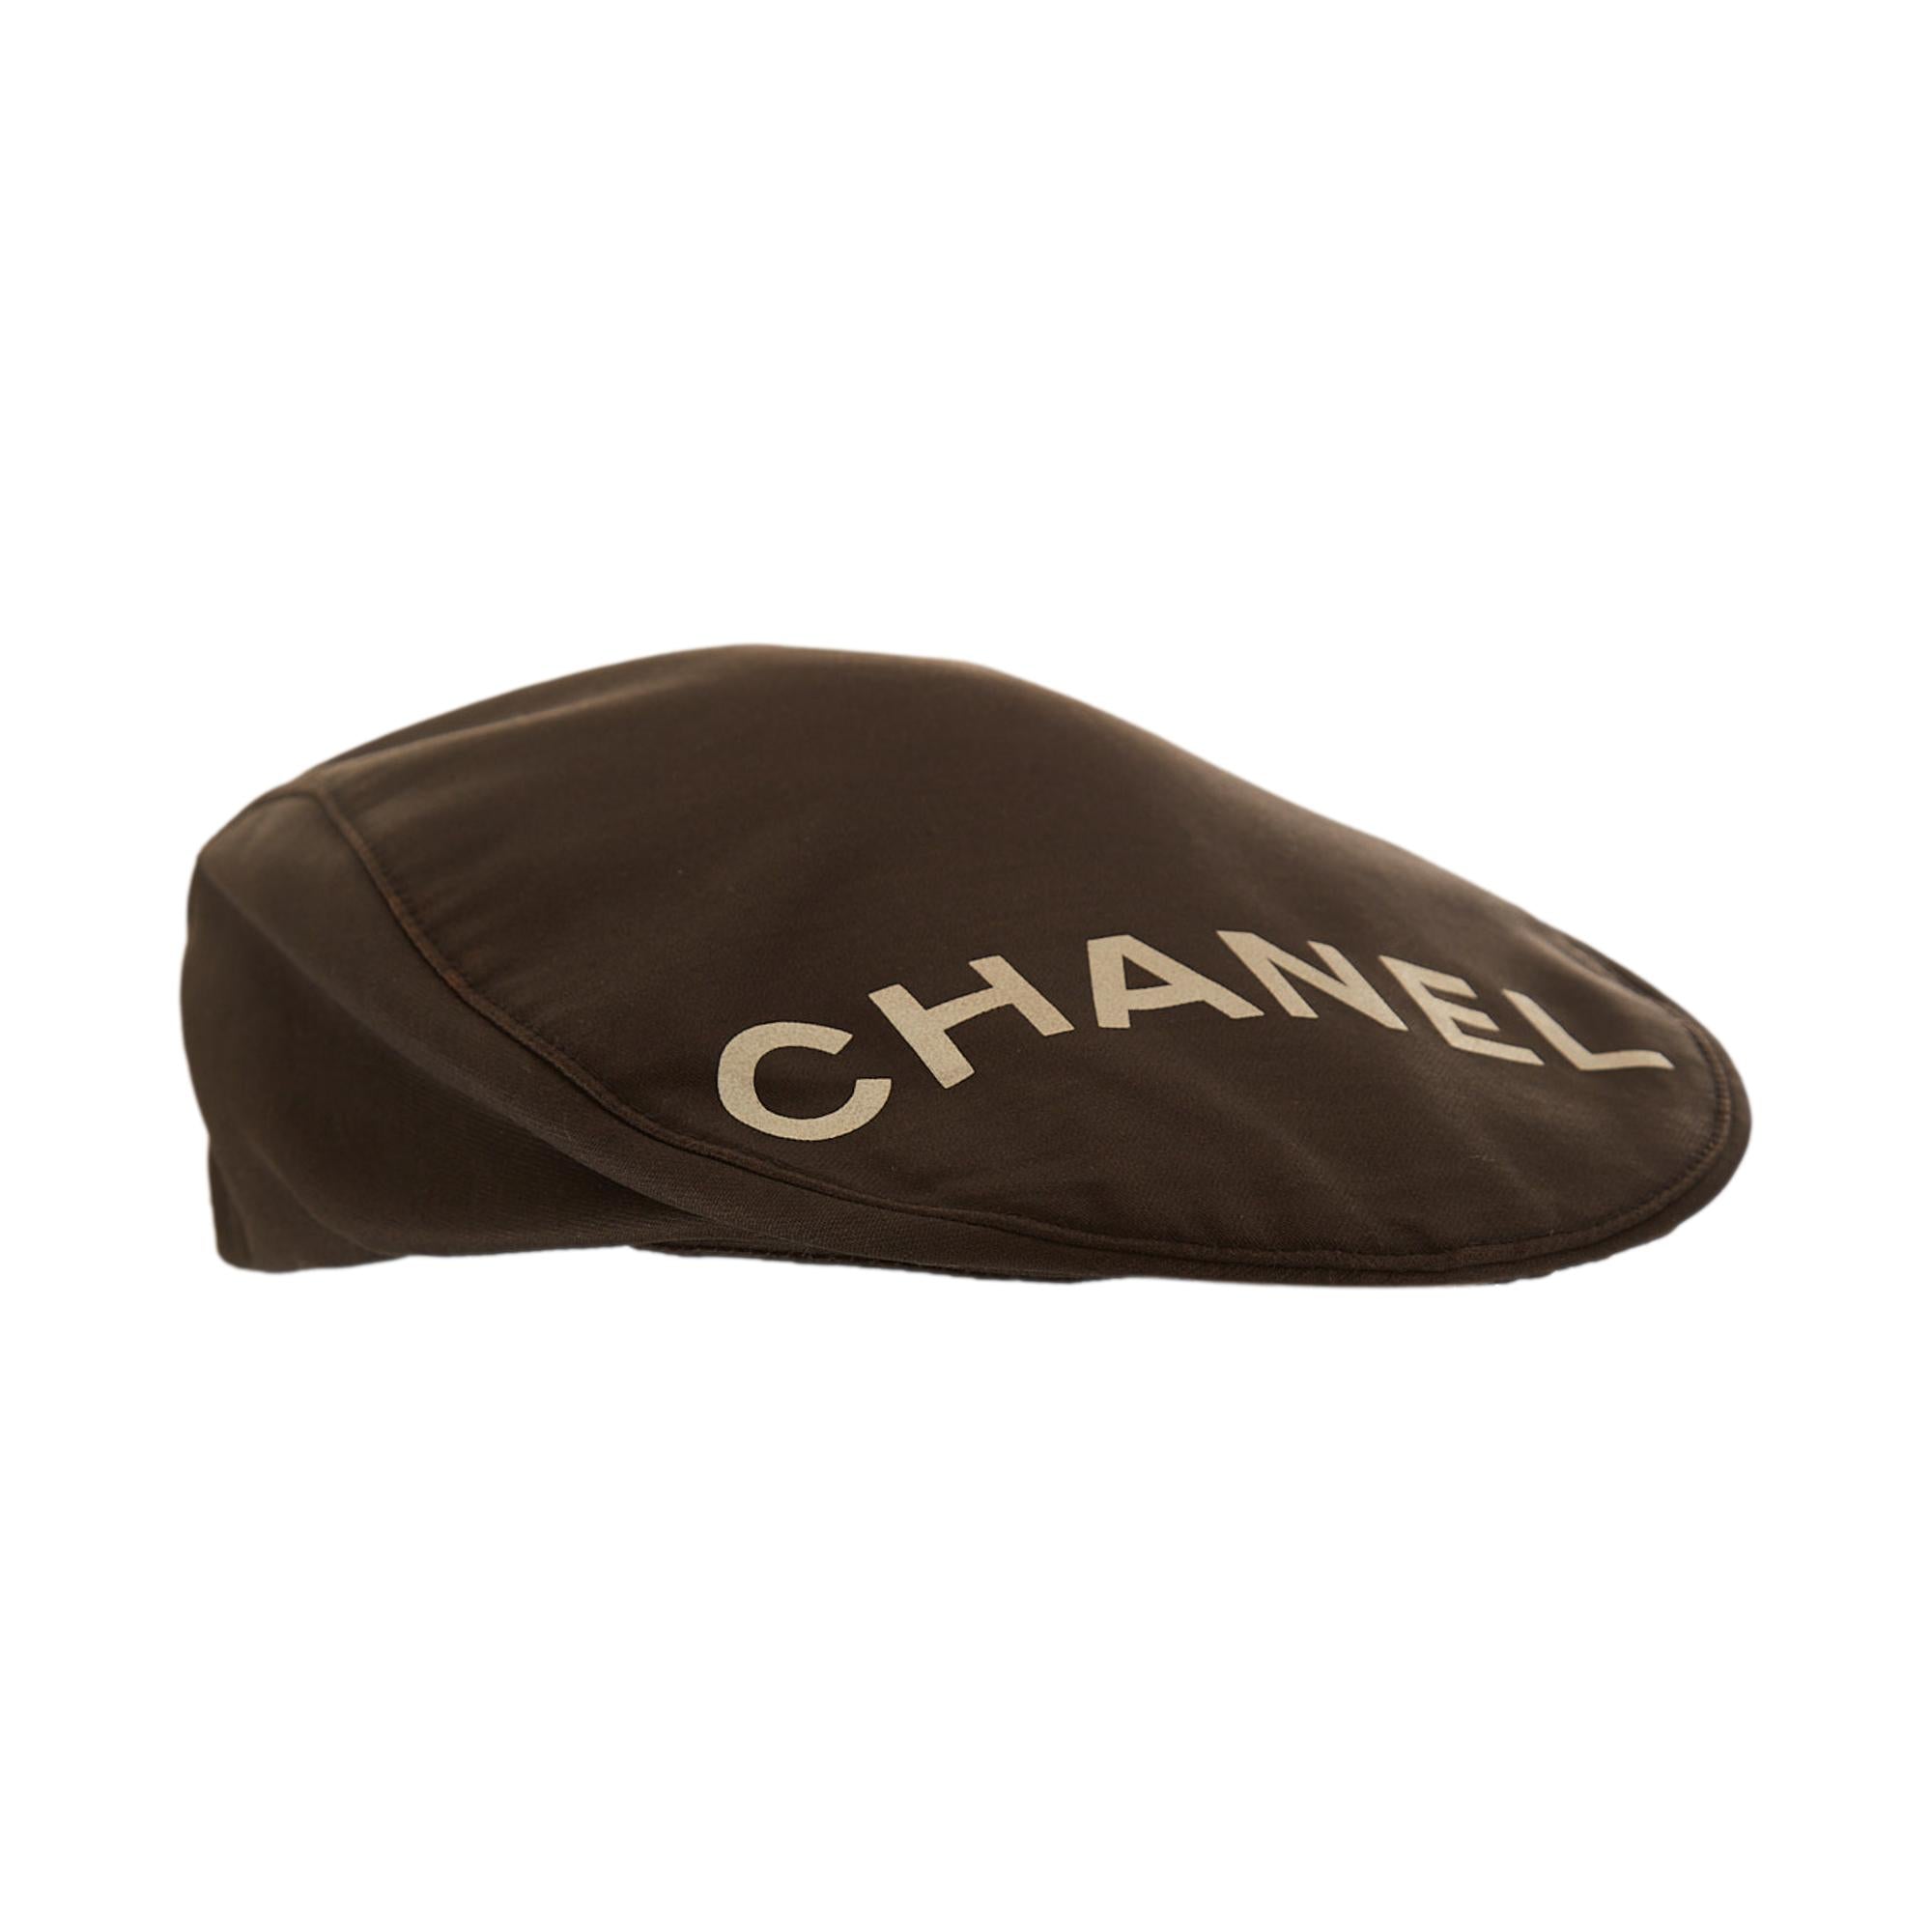 Treasures of NYC - Chanel Black Logo Casket Cap